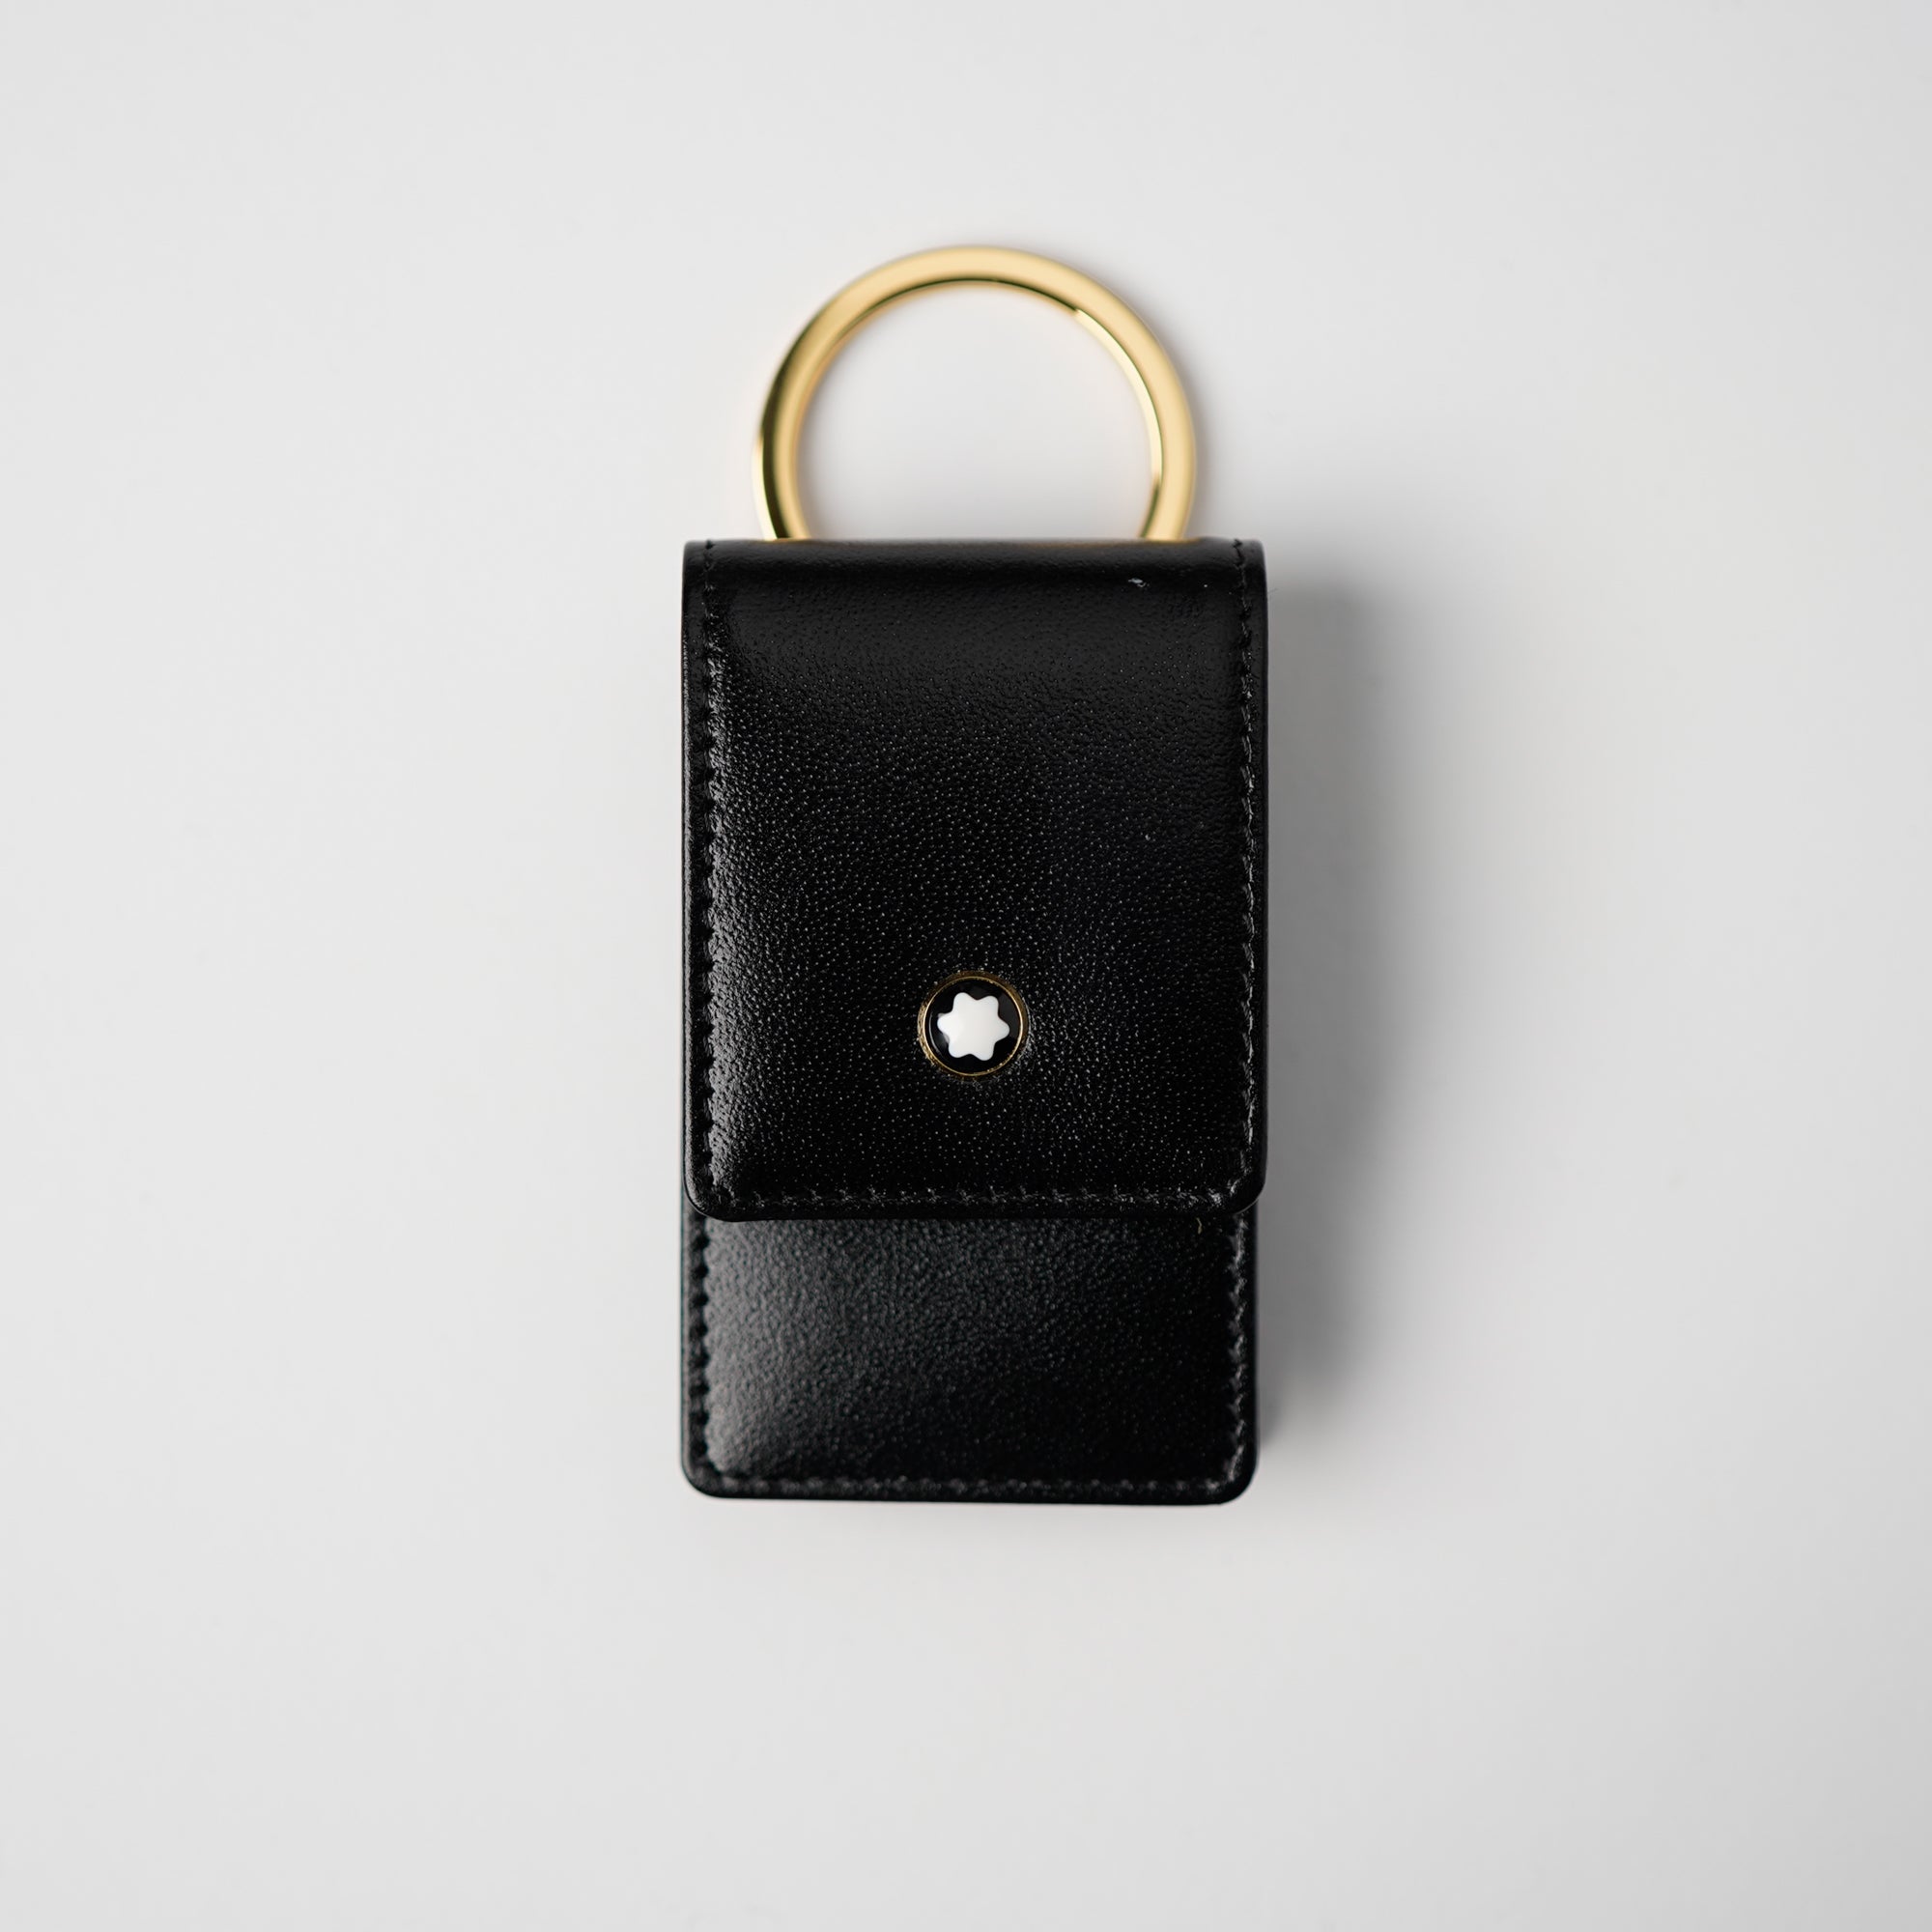 Produktfotografie des Mont Blanc Schlüsseletui in einem tief glänzendem schwarzen Leder